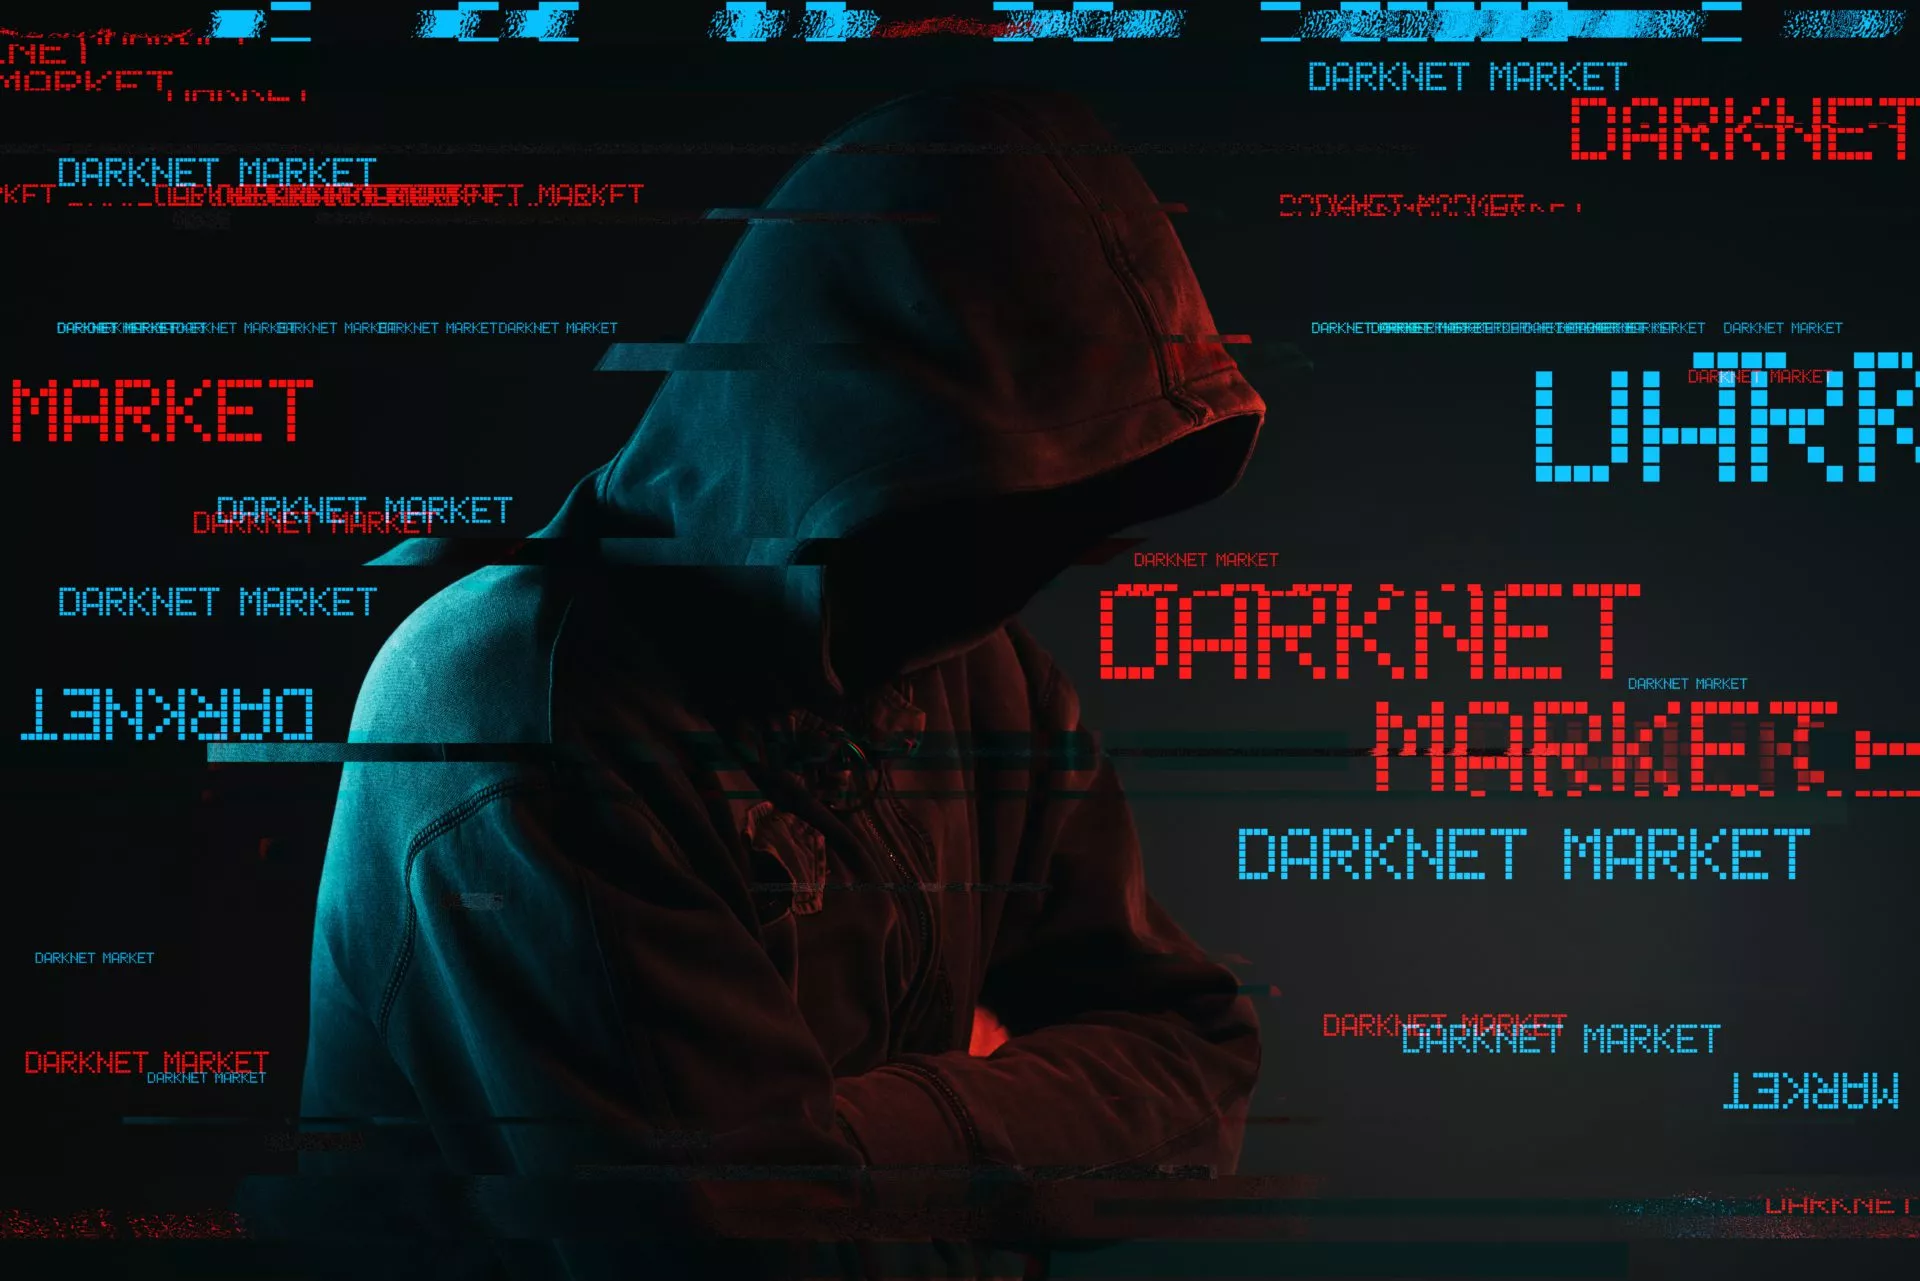 Darknet-markten verdienden in 2020 meer geld dan ooit